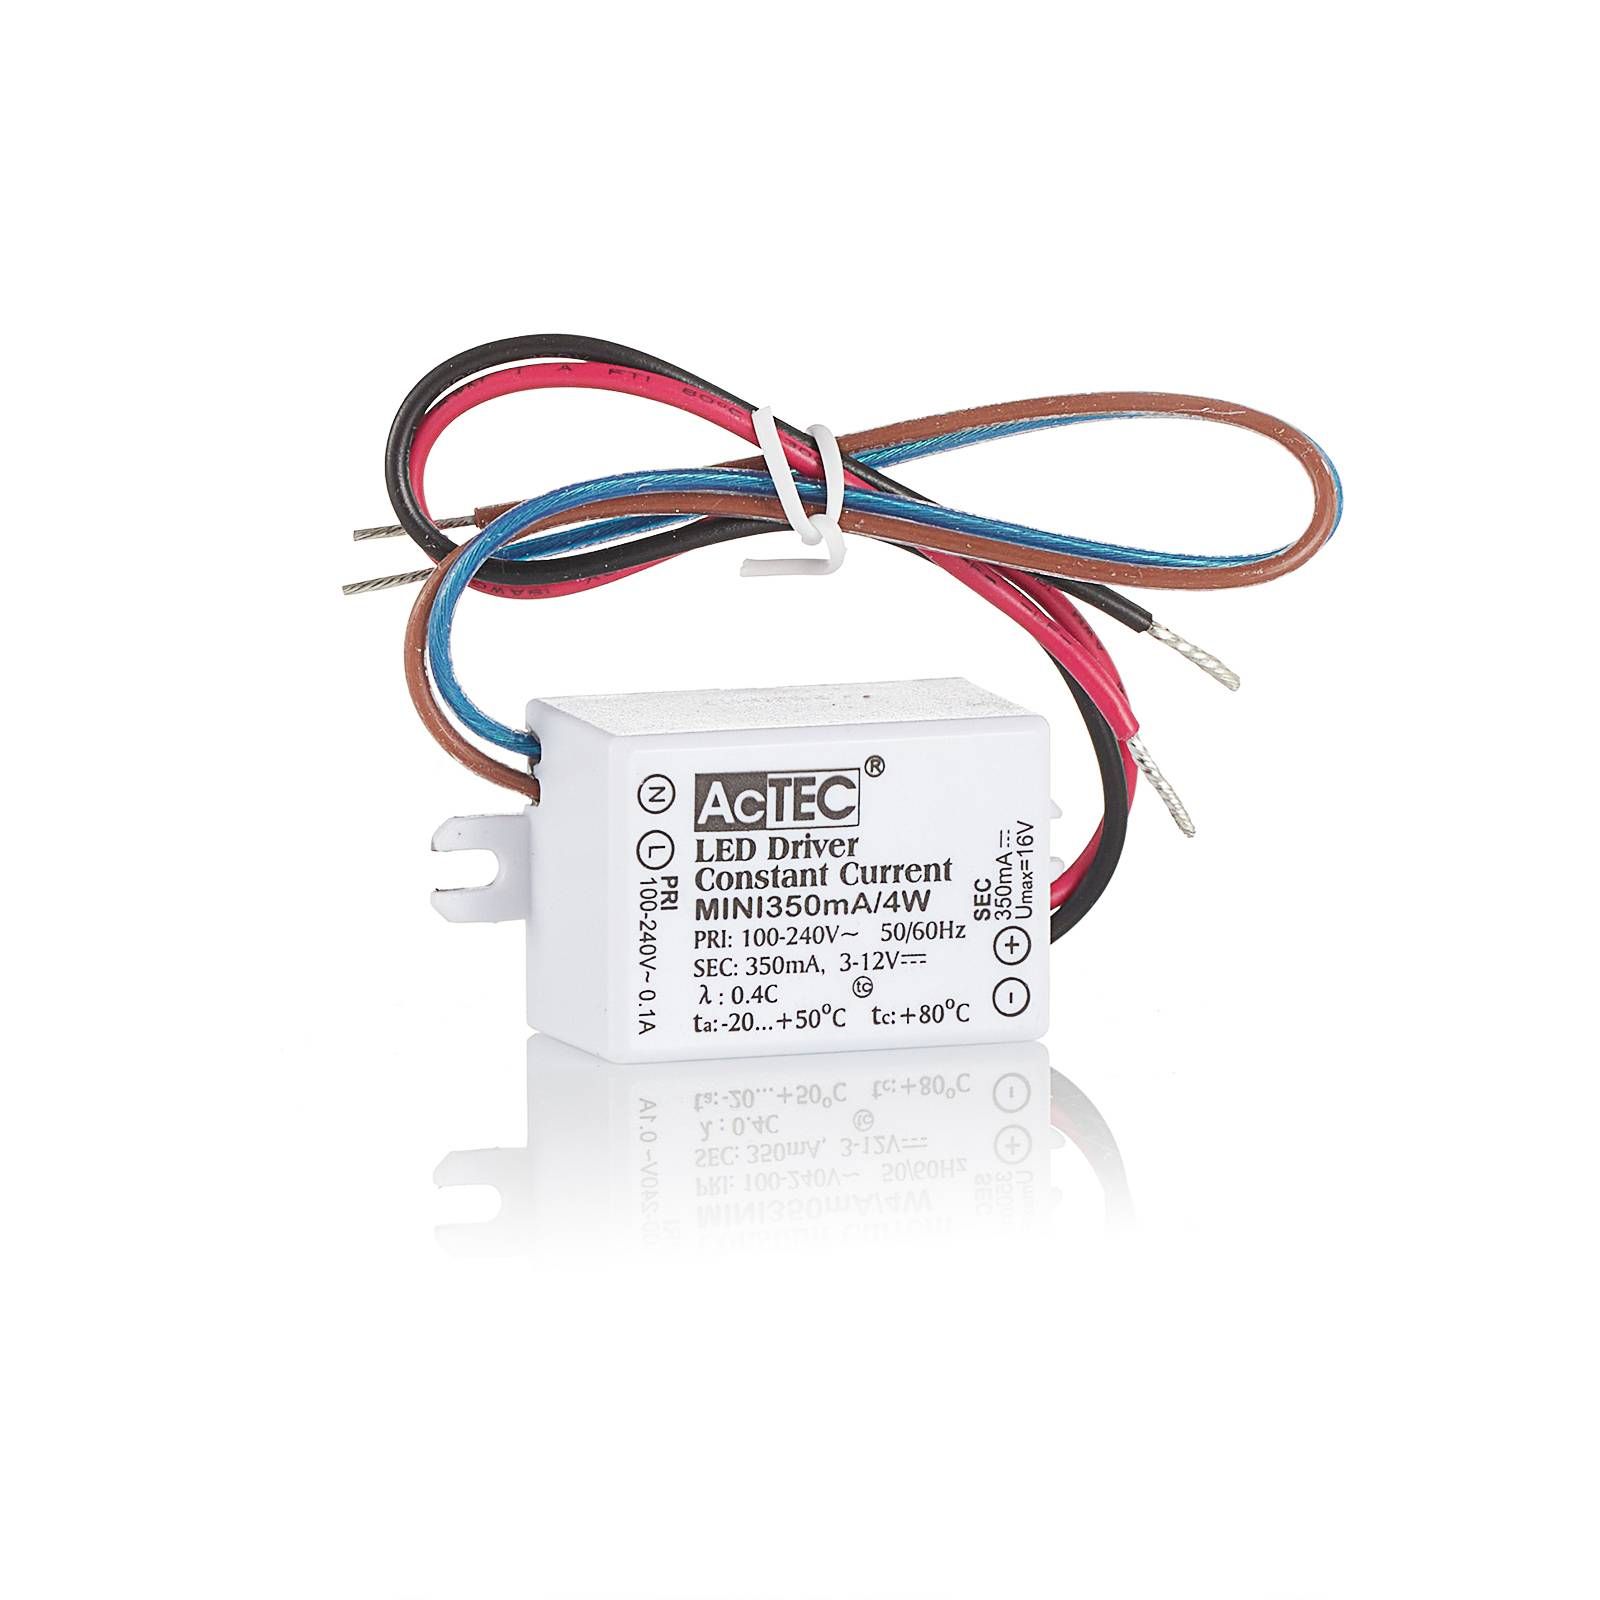 AcTEC Mini LED budič CC 700 mA, 4 W, IP65, plast, P: 5.3 cm, L: 2.7 cm, K: 2.1cm